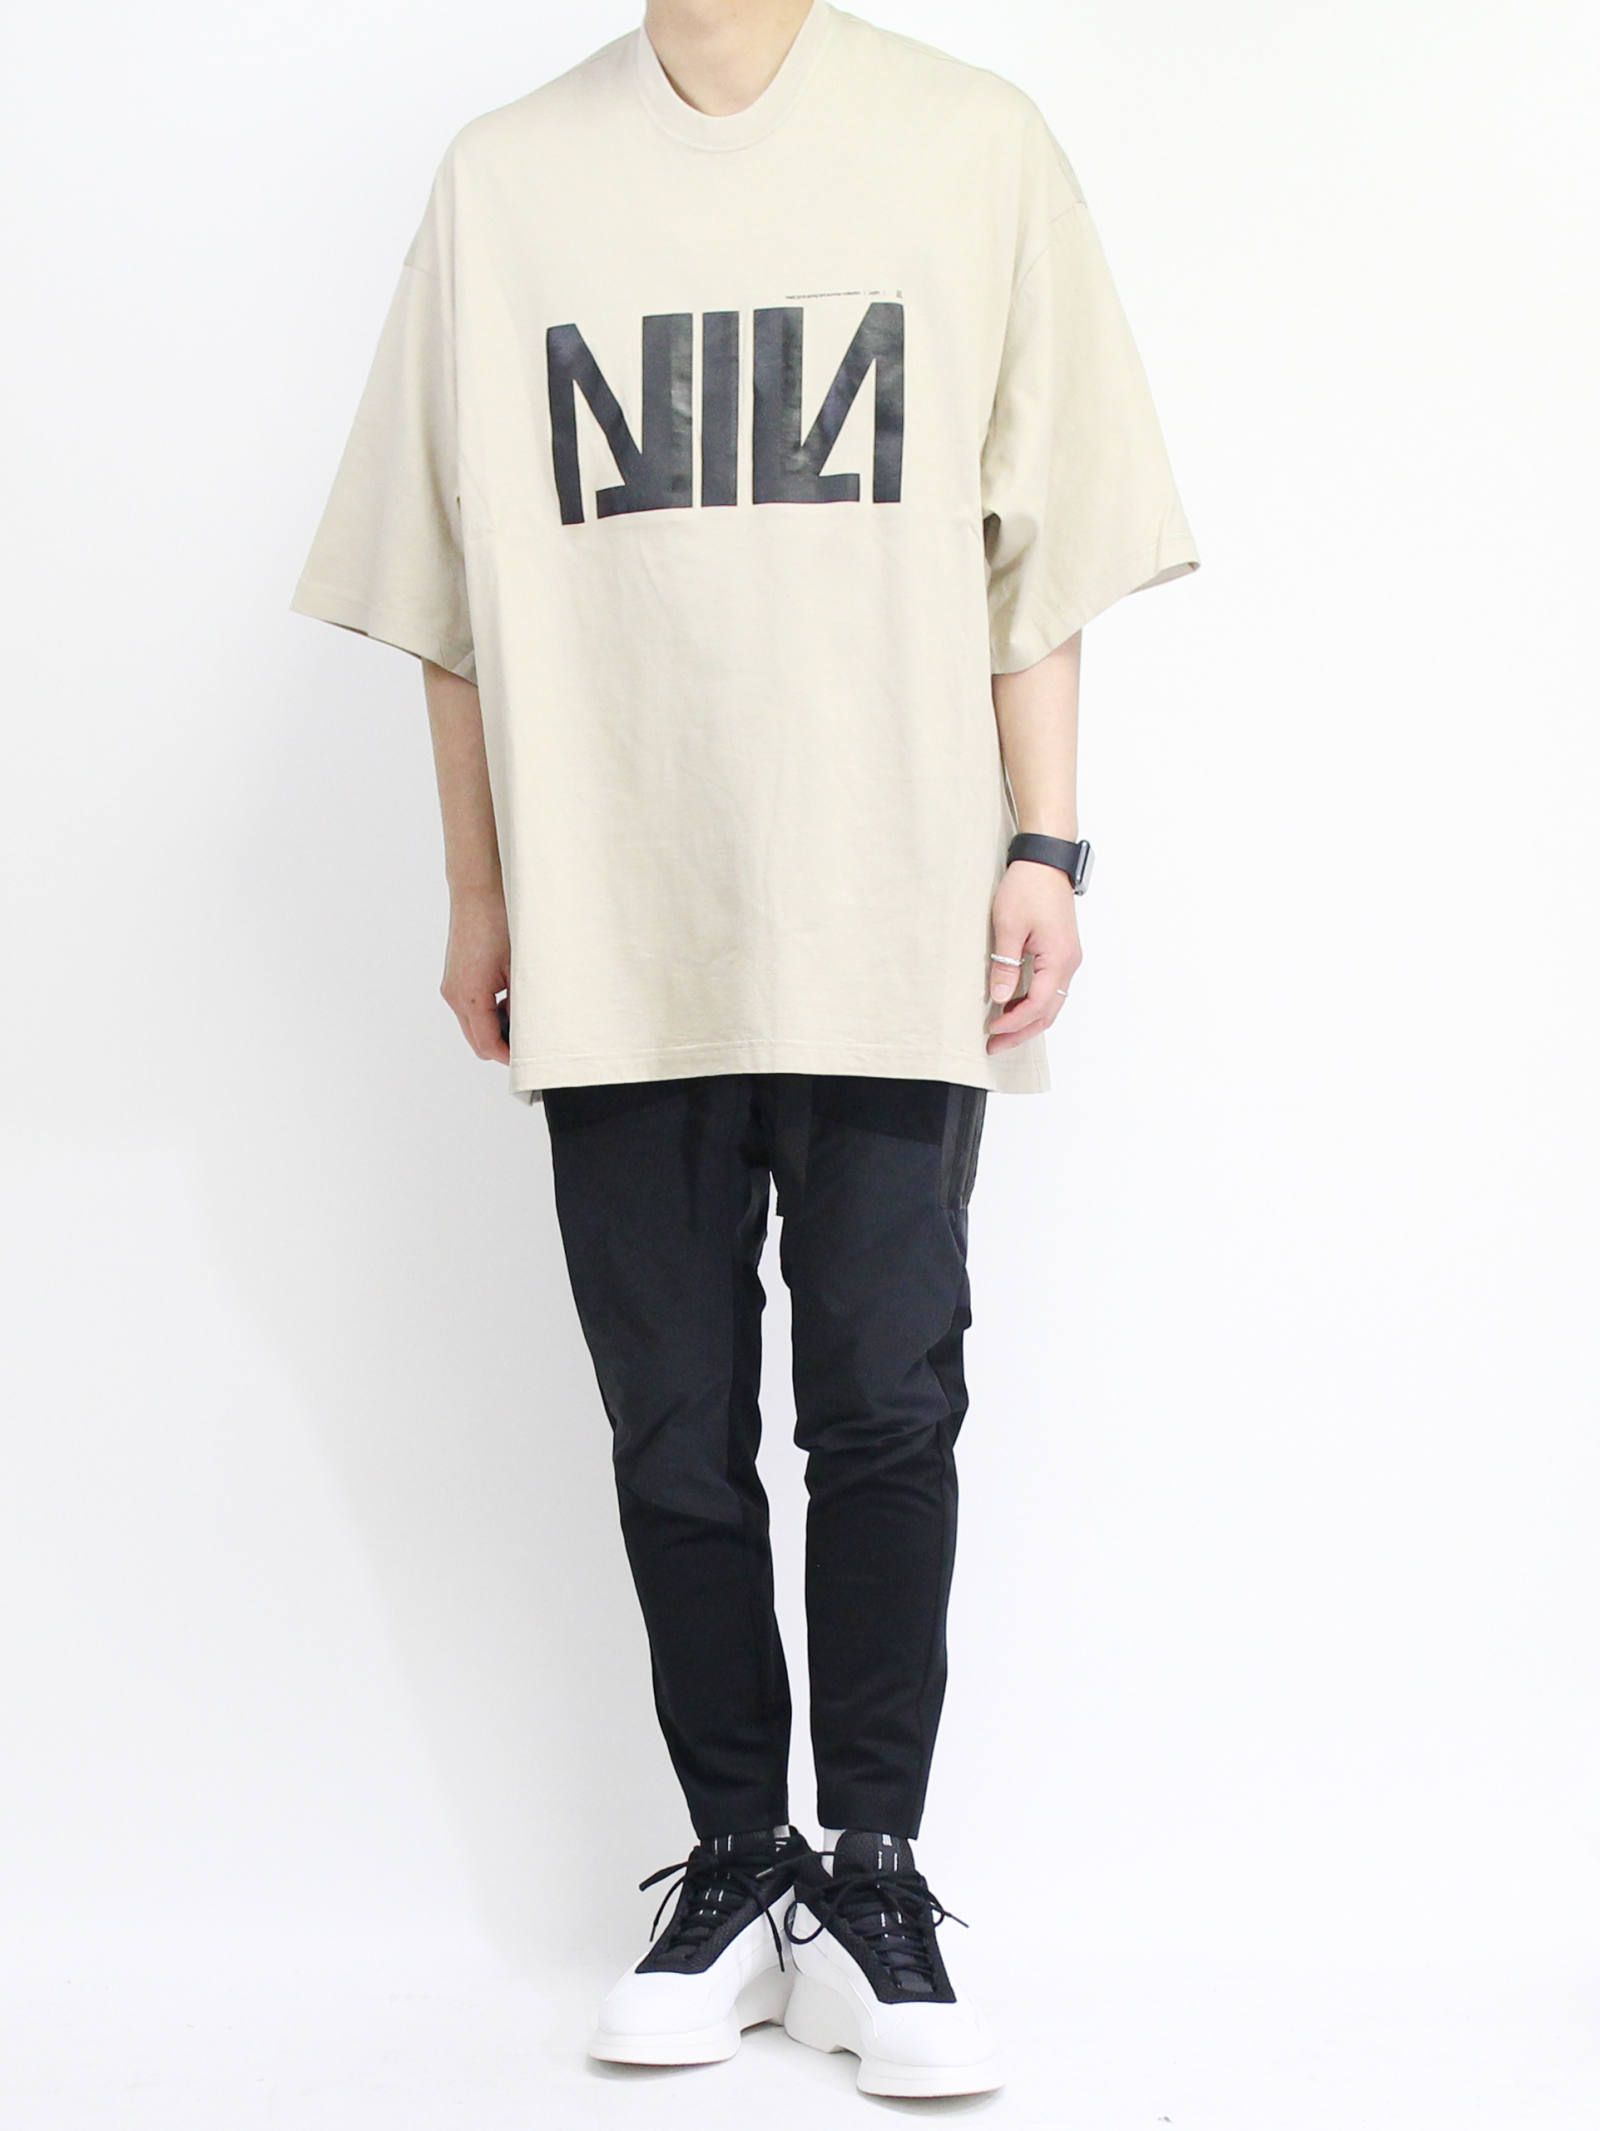 NILoS - ニルズビッグTシャツ - NIL BIG T-SHIRT - white | ADDICT WEB 